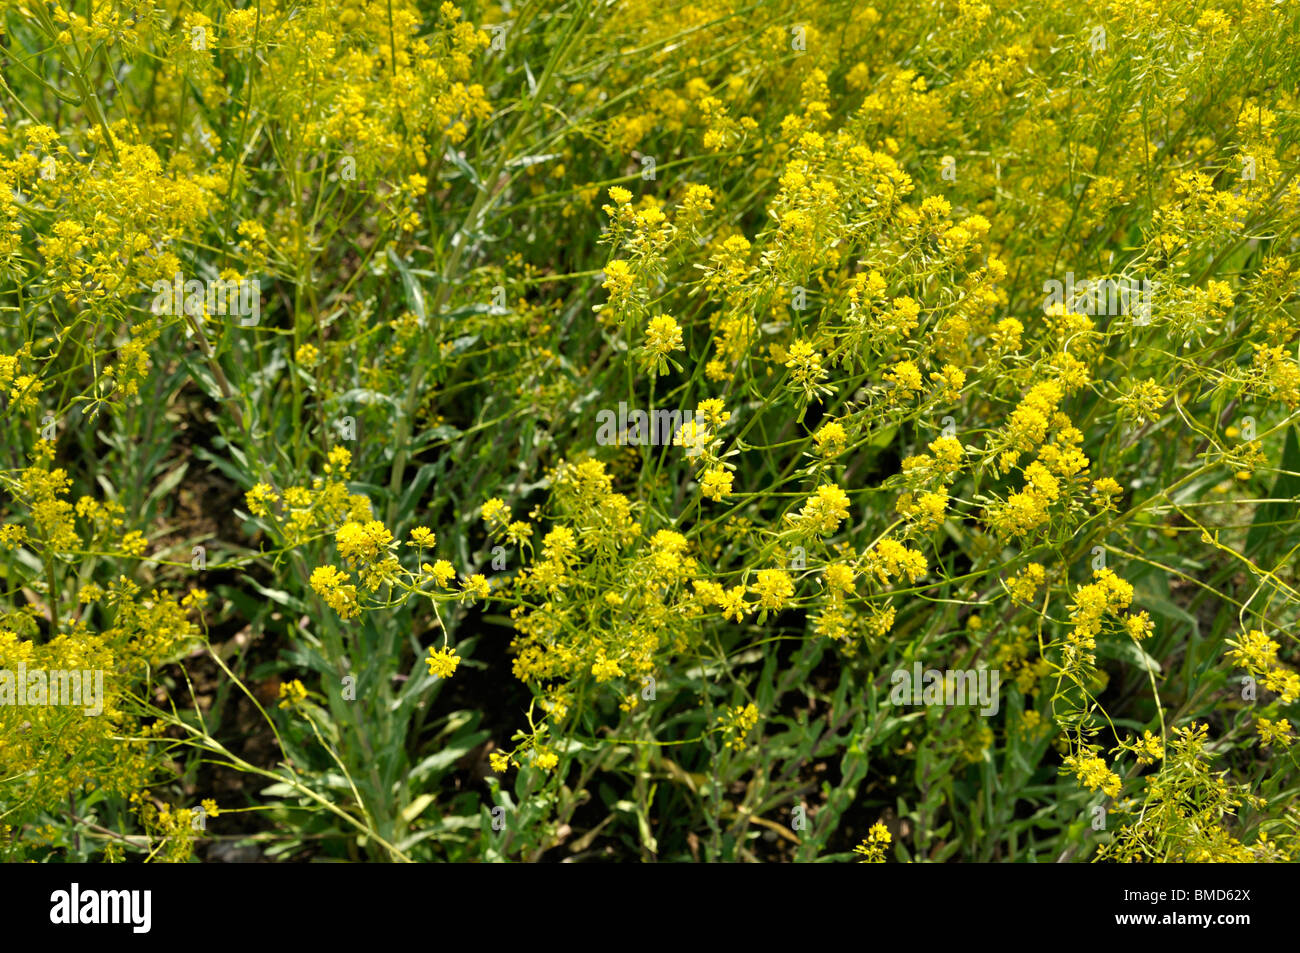 Common dyer's weed (Isatis tinctoria) Stock Photo